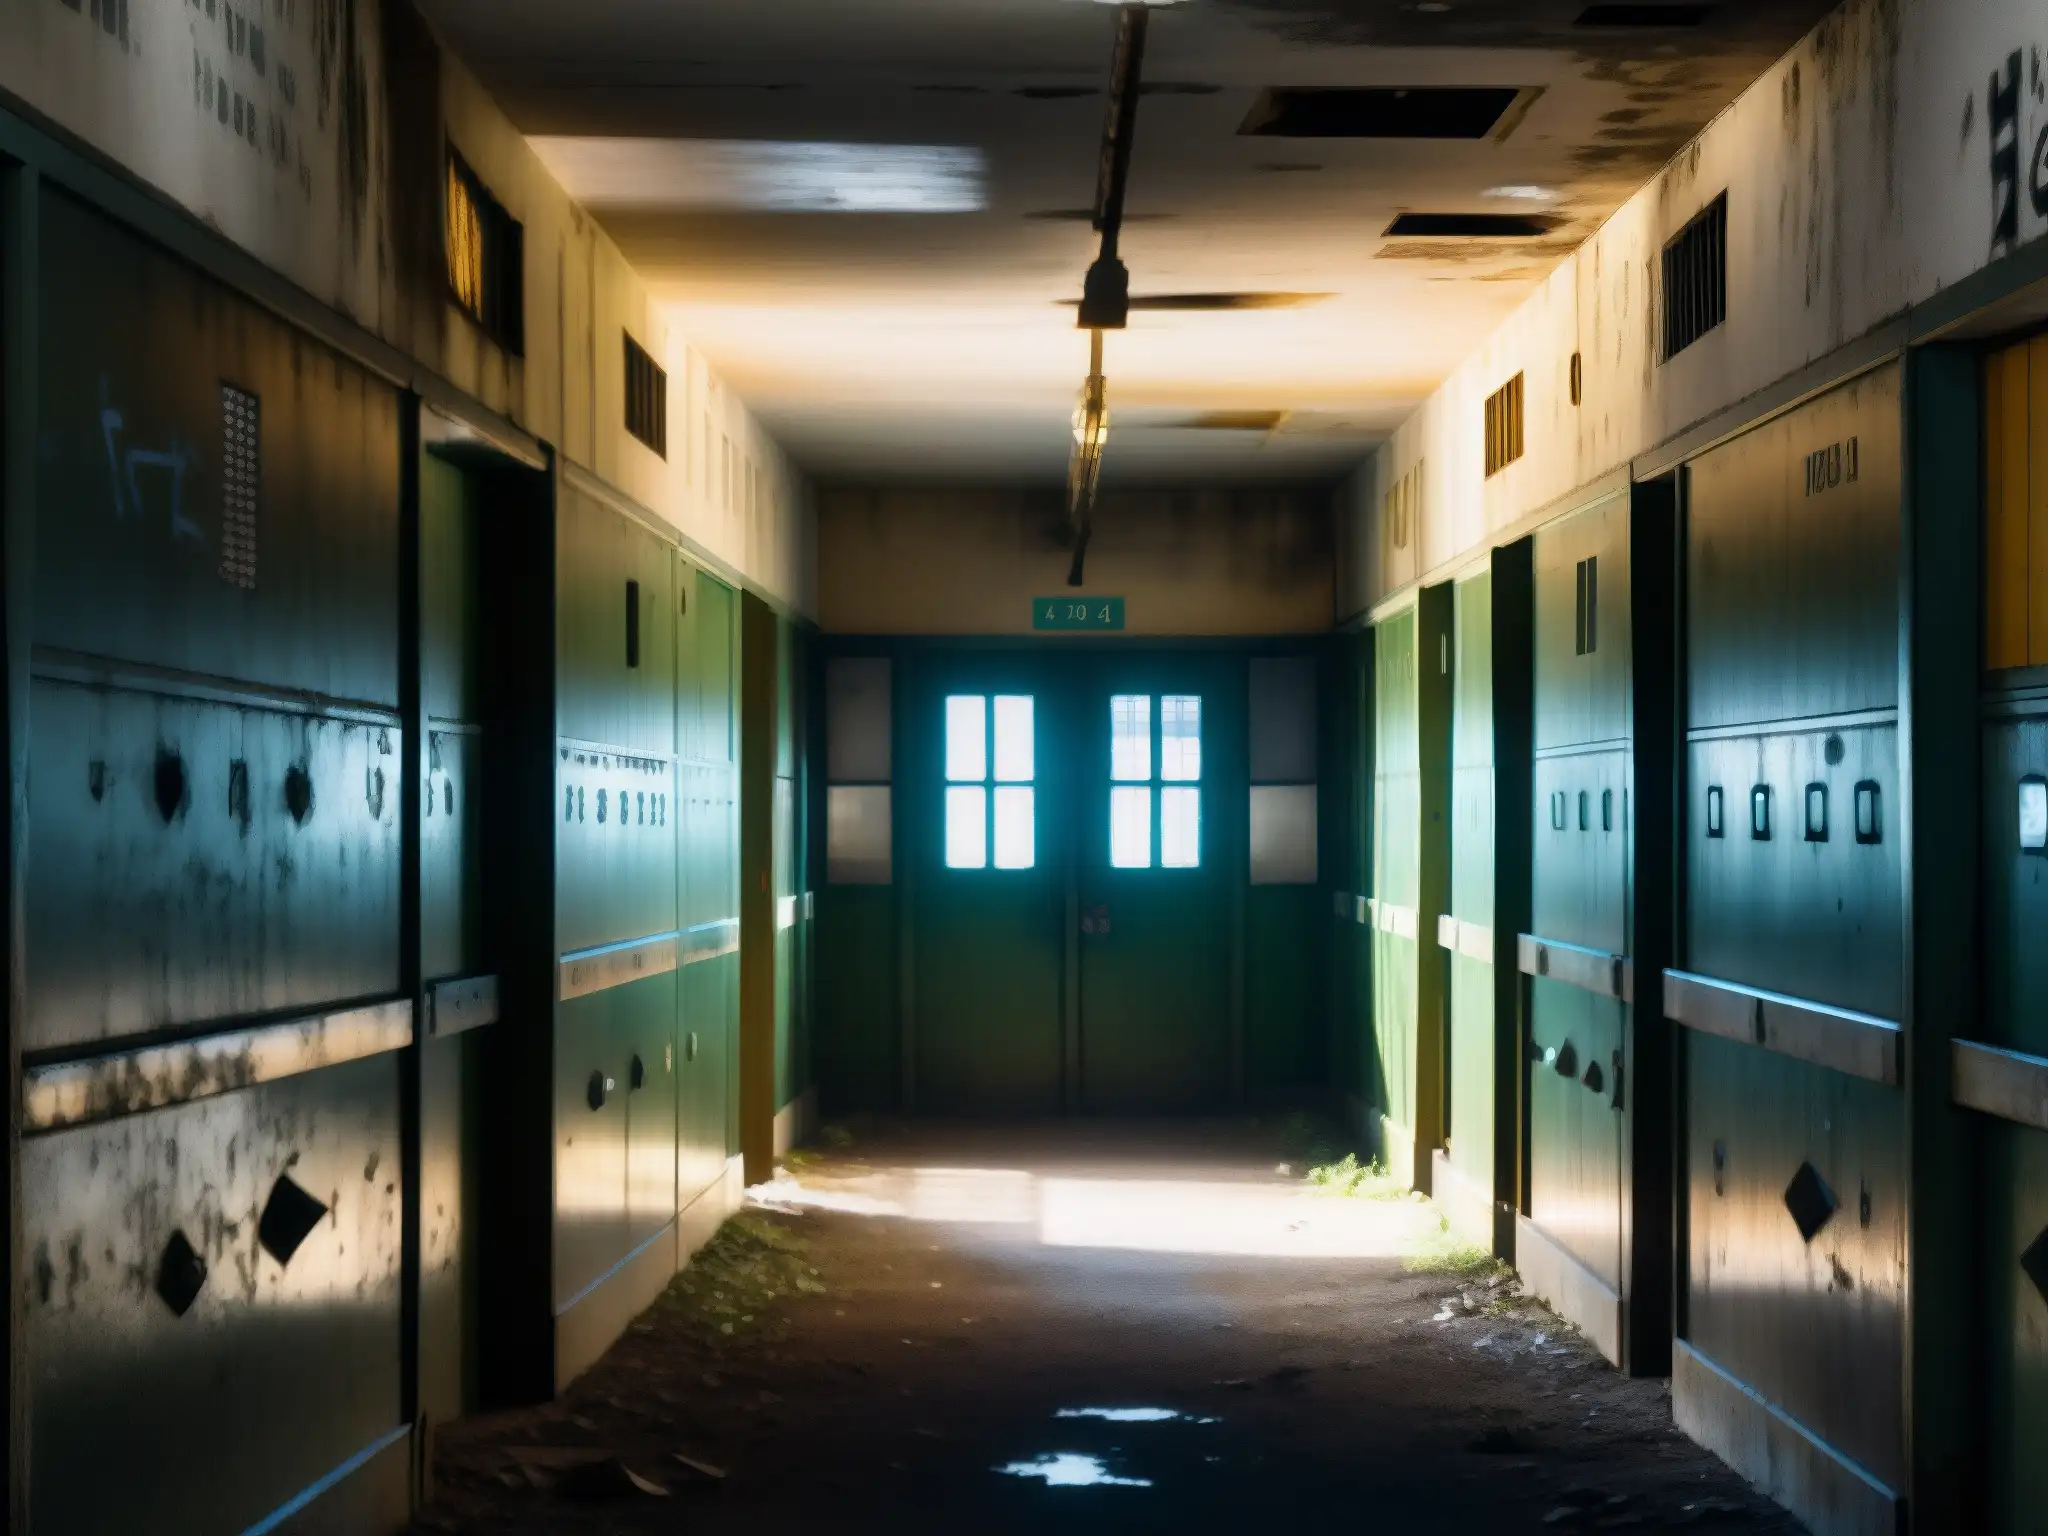 Corredores abandonados de la Prisión Celular, con graffiti desvaído, puertas rotas y luz filtrándose por las ventanas enrejadas